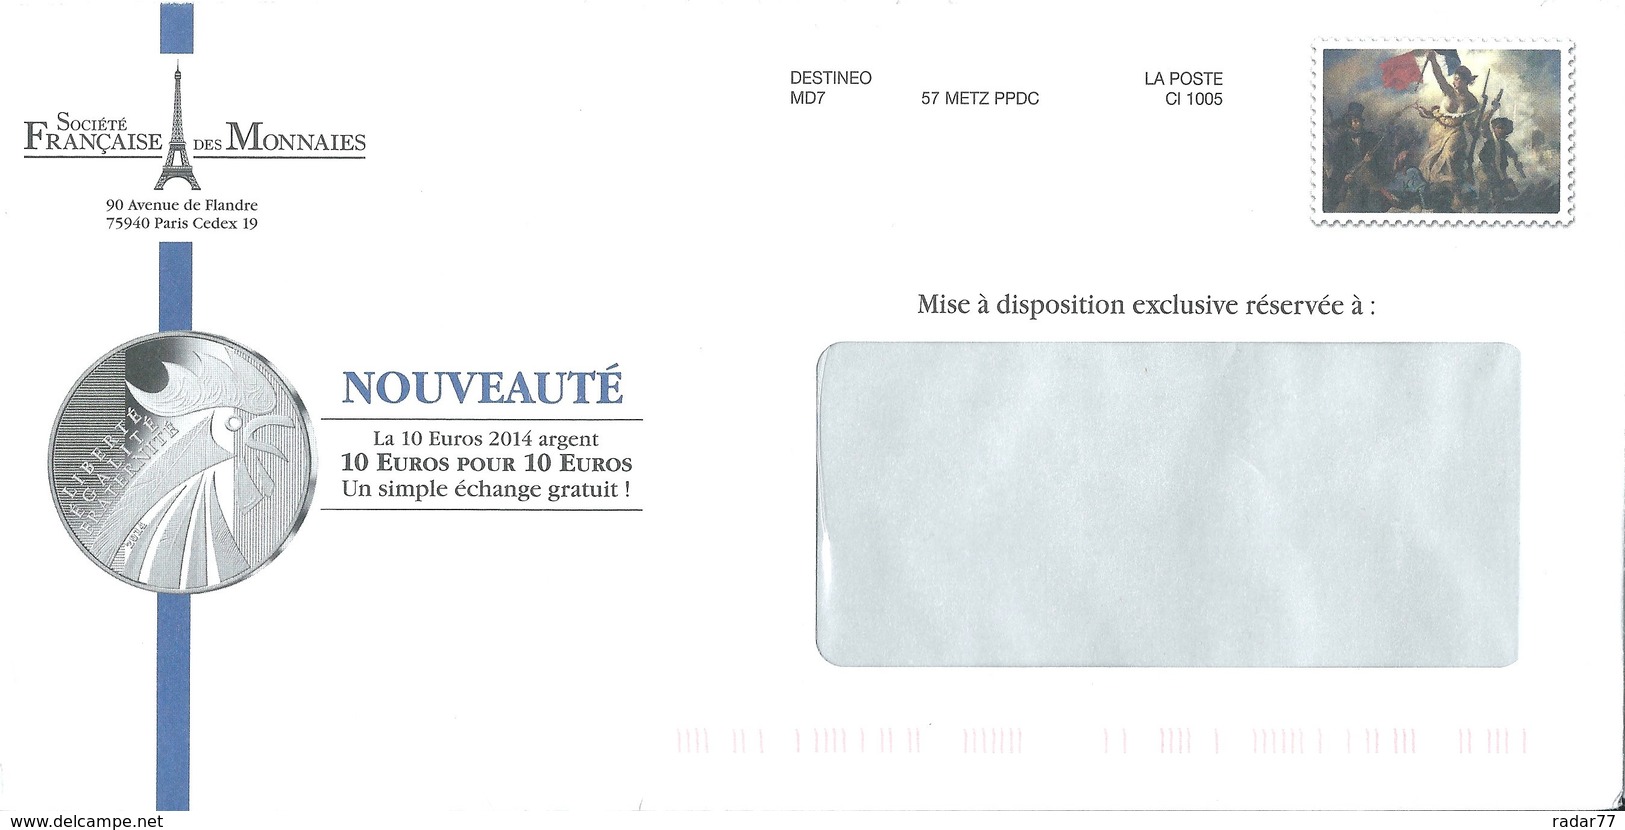 Destineo MD7 Avec Simili-timbre "Liberté Guidant Le Peuple" De Delacroix - Pseudo-entiers Privés